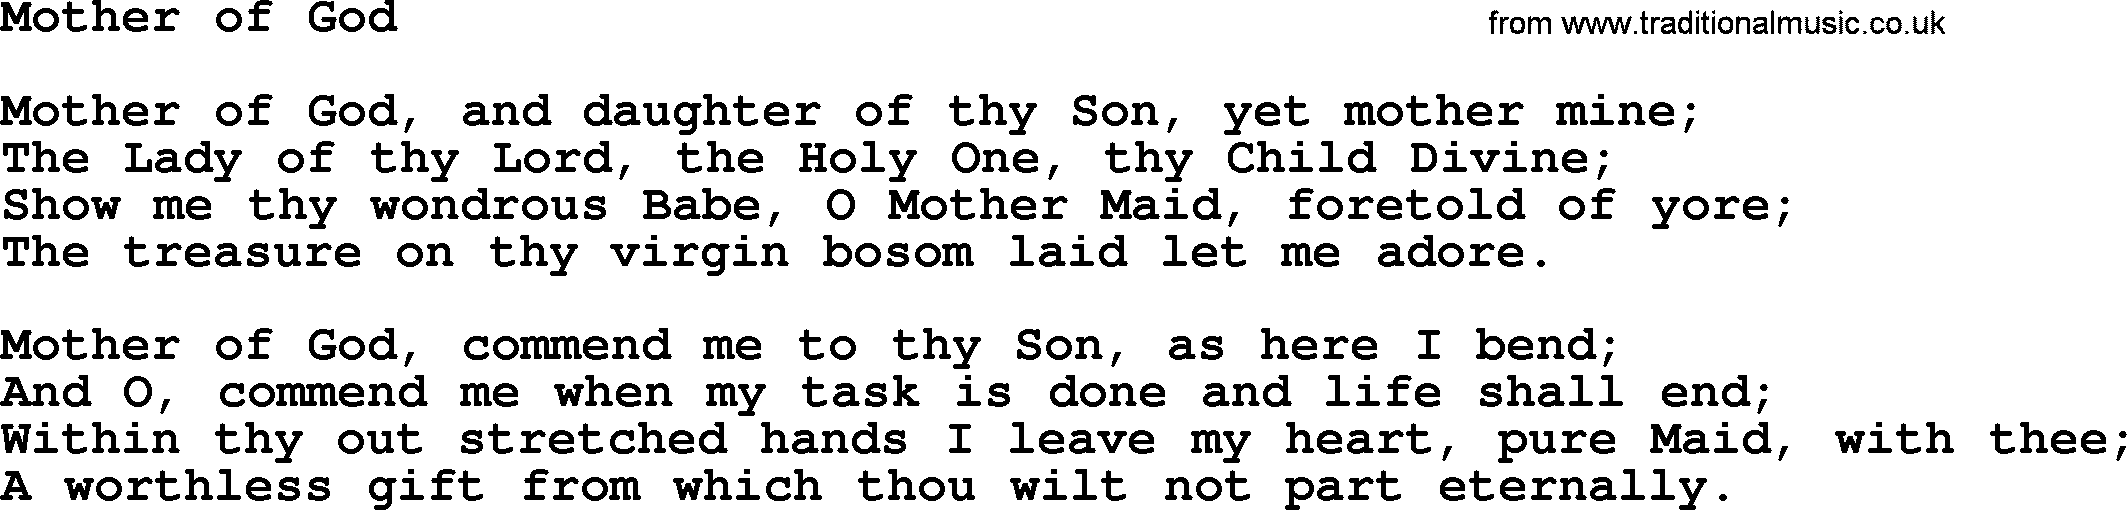 Catholic Hymn: Mother Of God lyrics with PDF